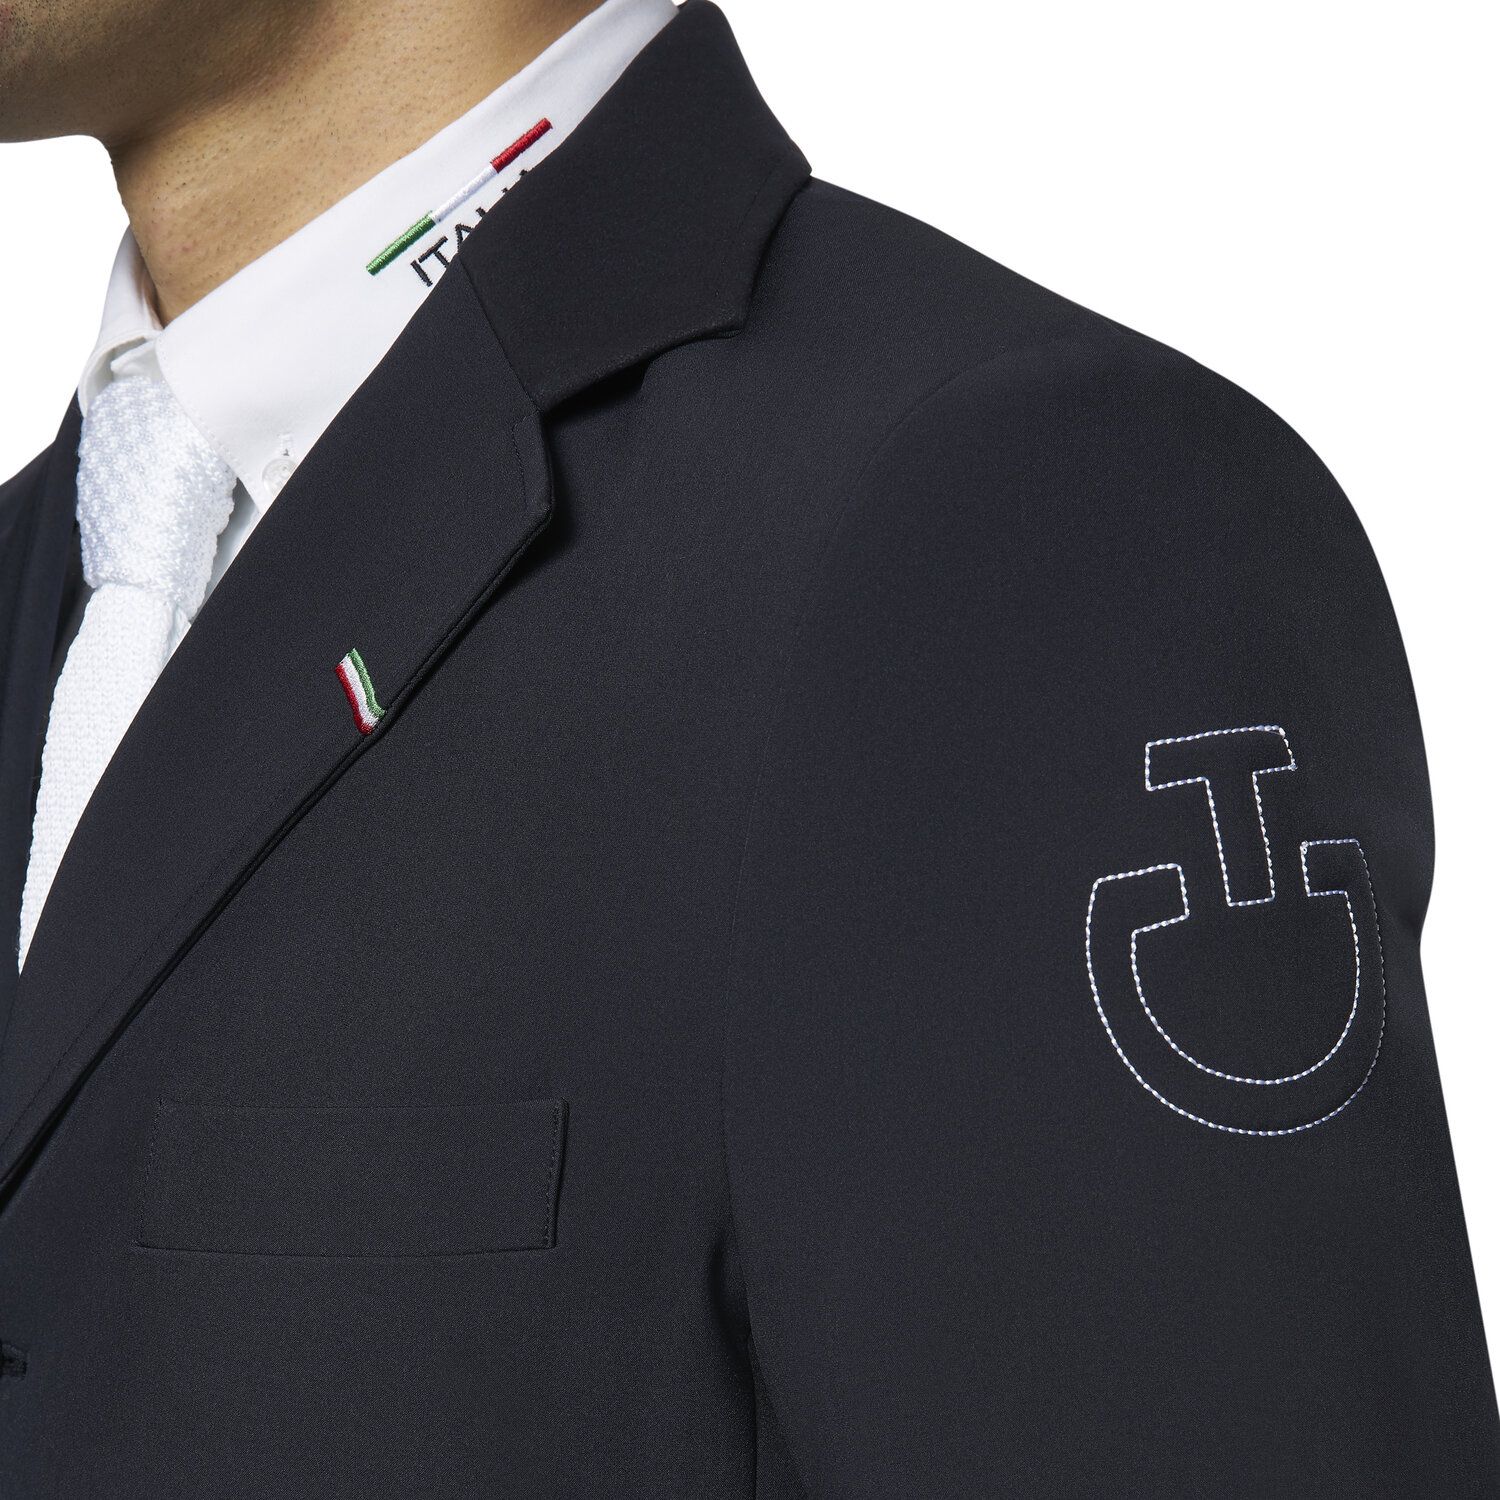 Cavalleria Toscana FISE men's jacket NAVY-4